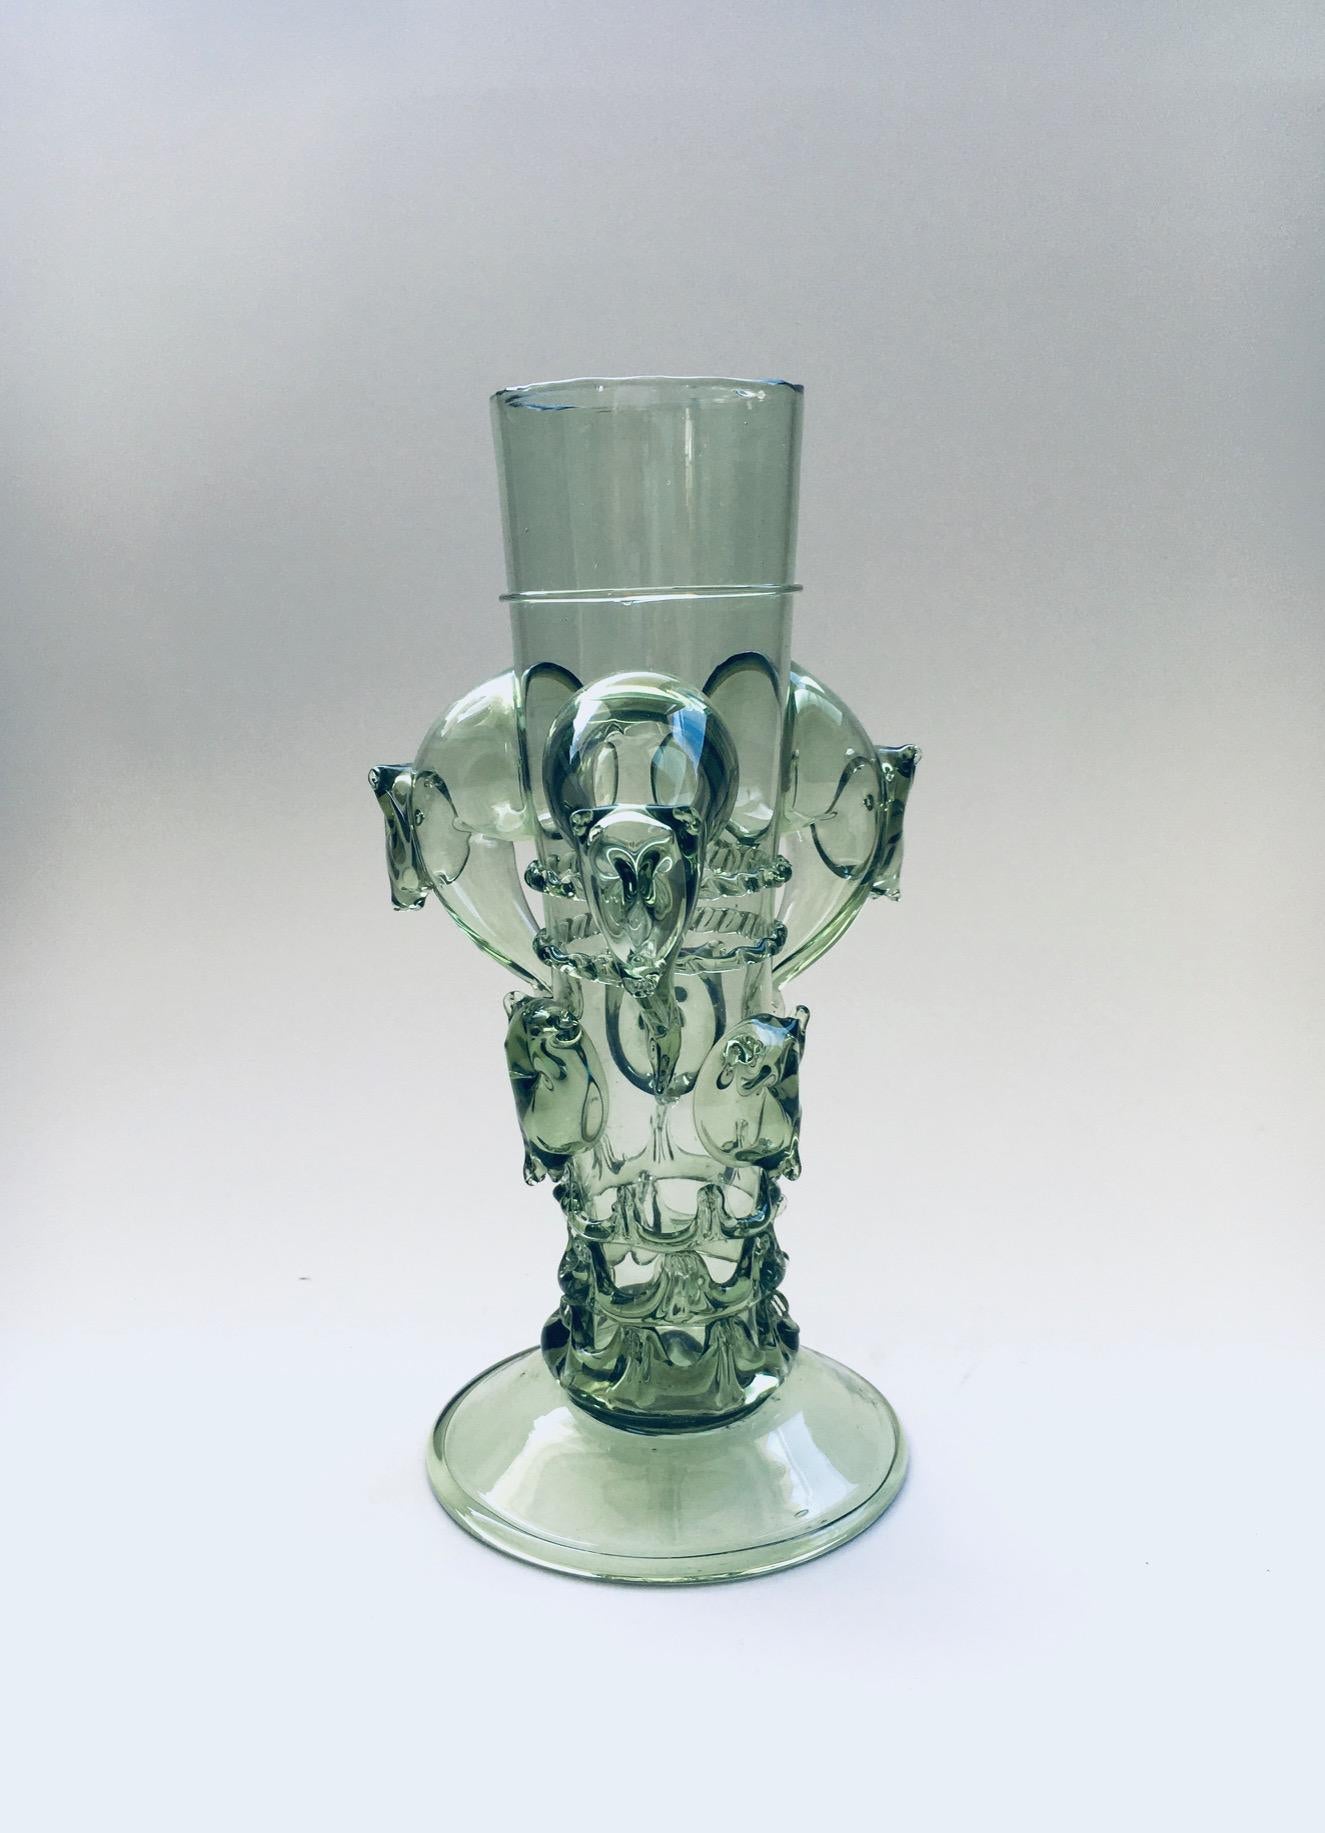 Vase en verre d'art original du début du 20e siècle, de conception italienne, en verre vert pâle. Fabriqué en Italie, dans la région de Murano, au début du XXe siècle. Magnifique vase en verre d'art soufflé à la main, vert pâle, entouré de figures